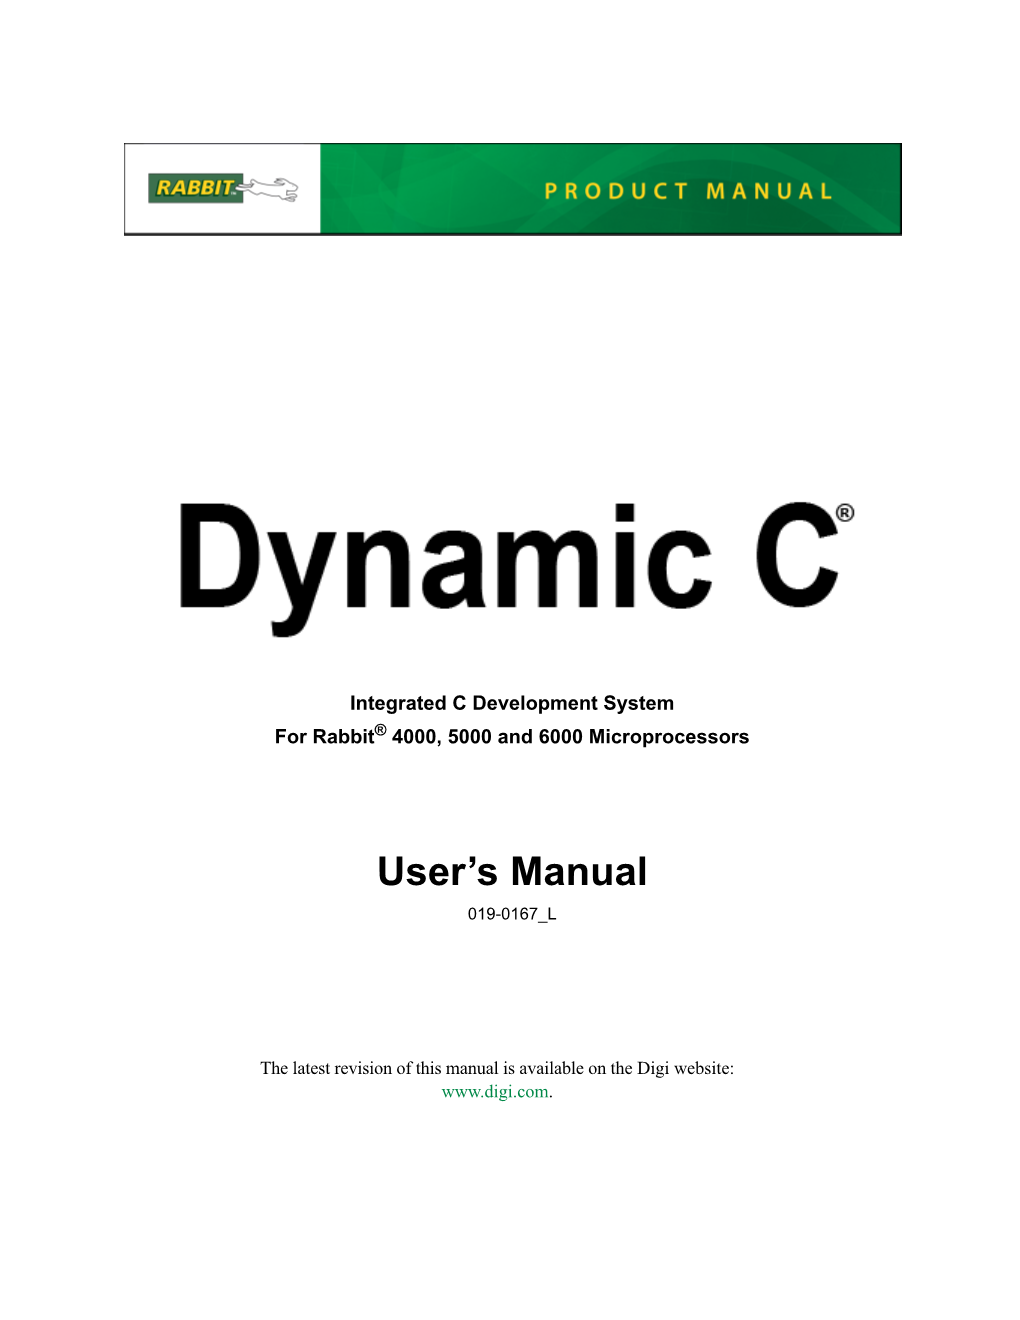 Dynamic C User's Manual